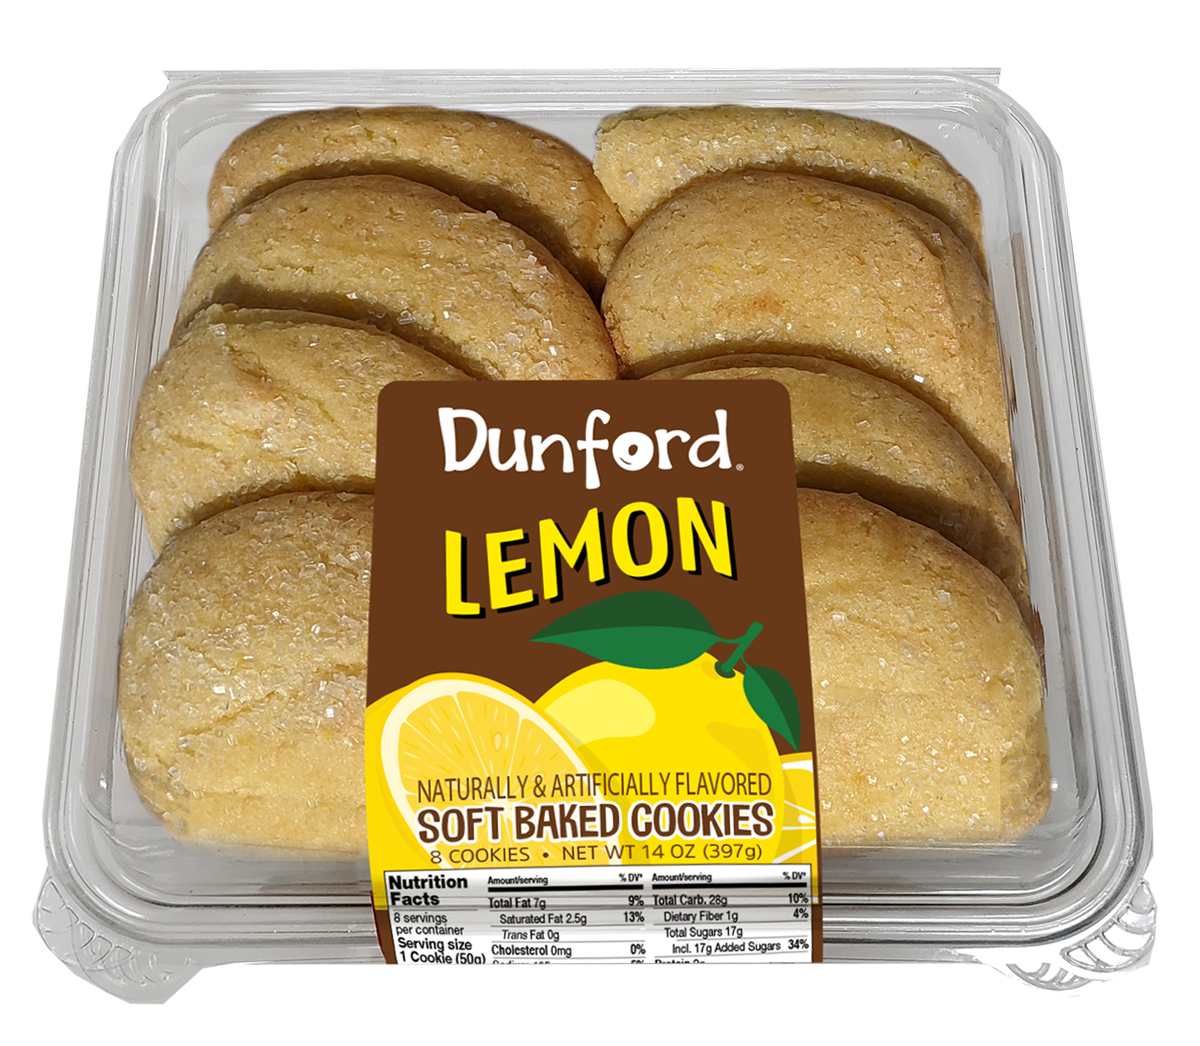 Dunford Lemon Cookies